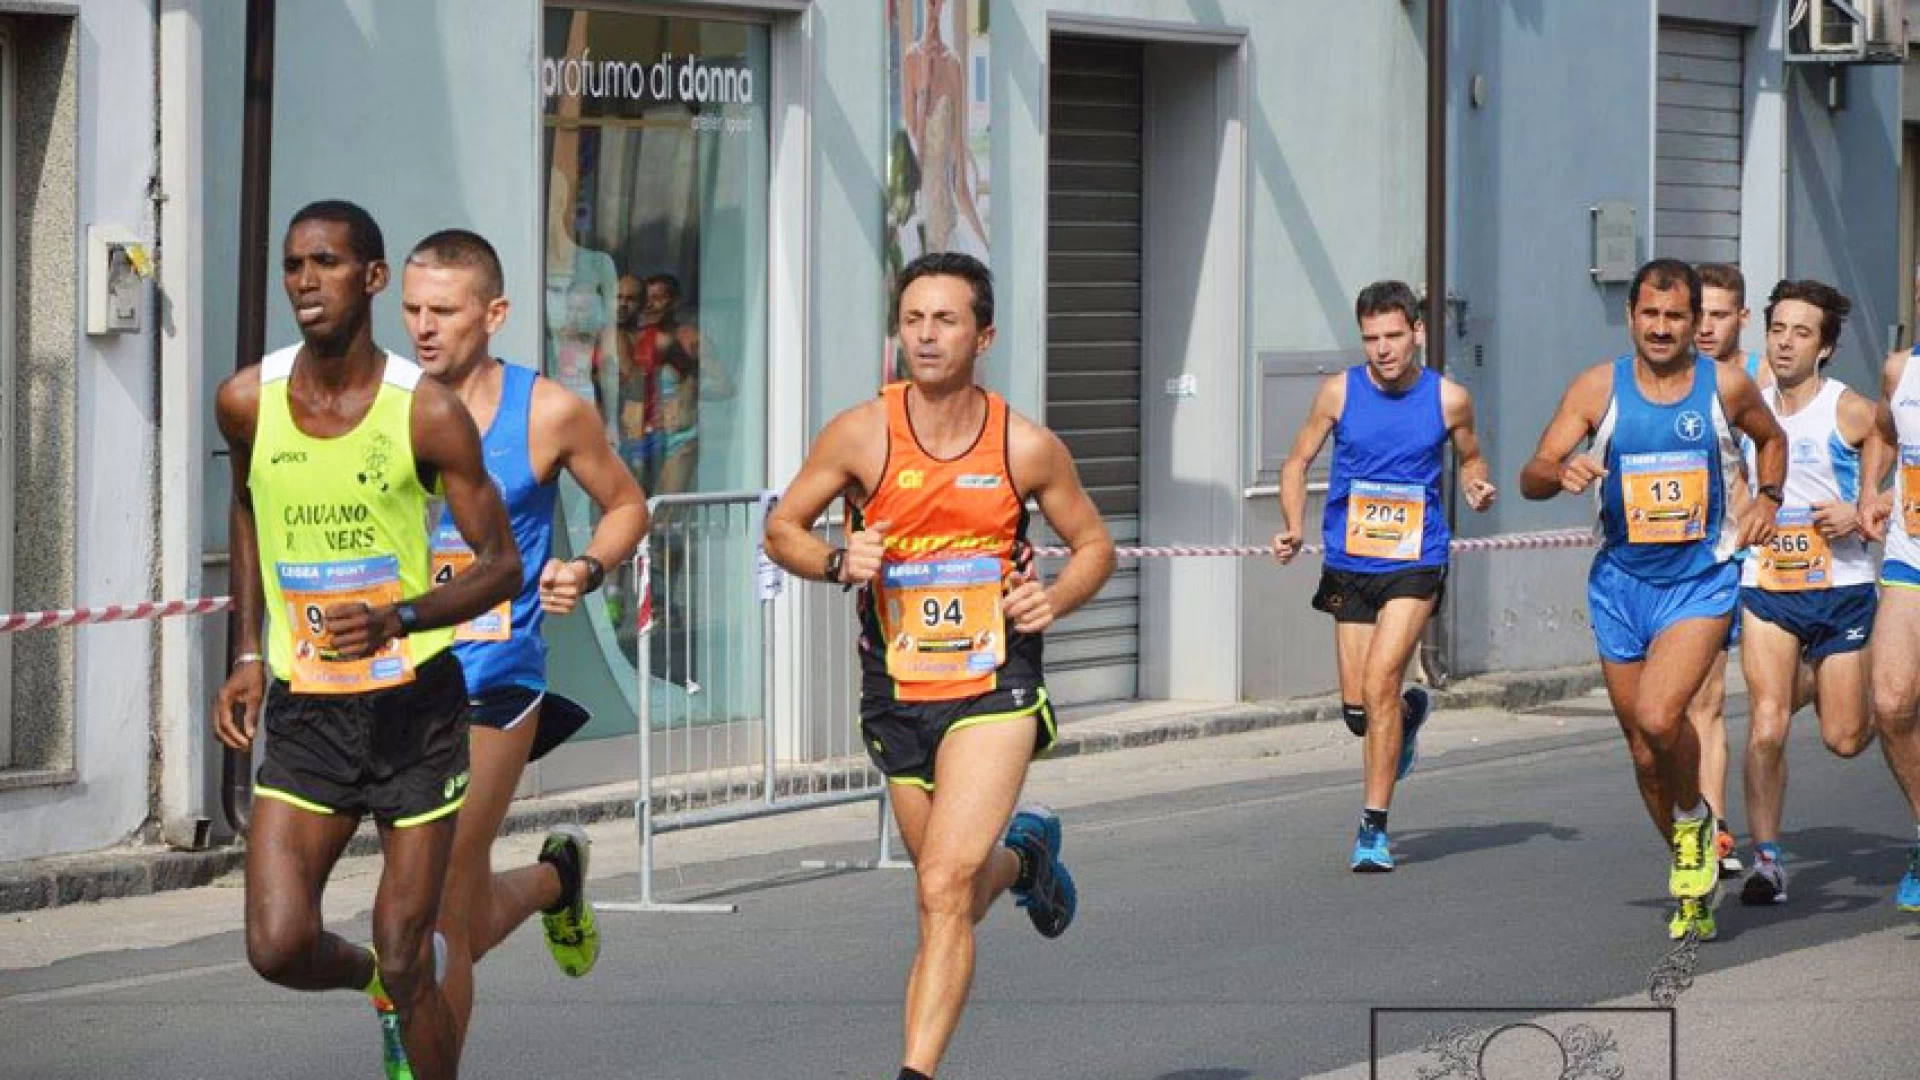 Atletica leggera: Piero Mignogna nono assoluto alla Stramontesarchio. Un grande risultato per l’atleta della Runners Termoli.